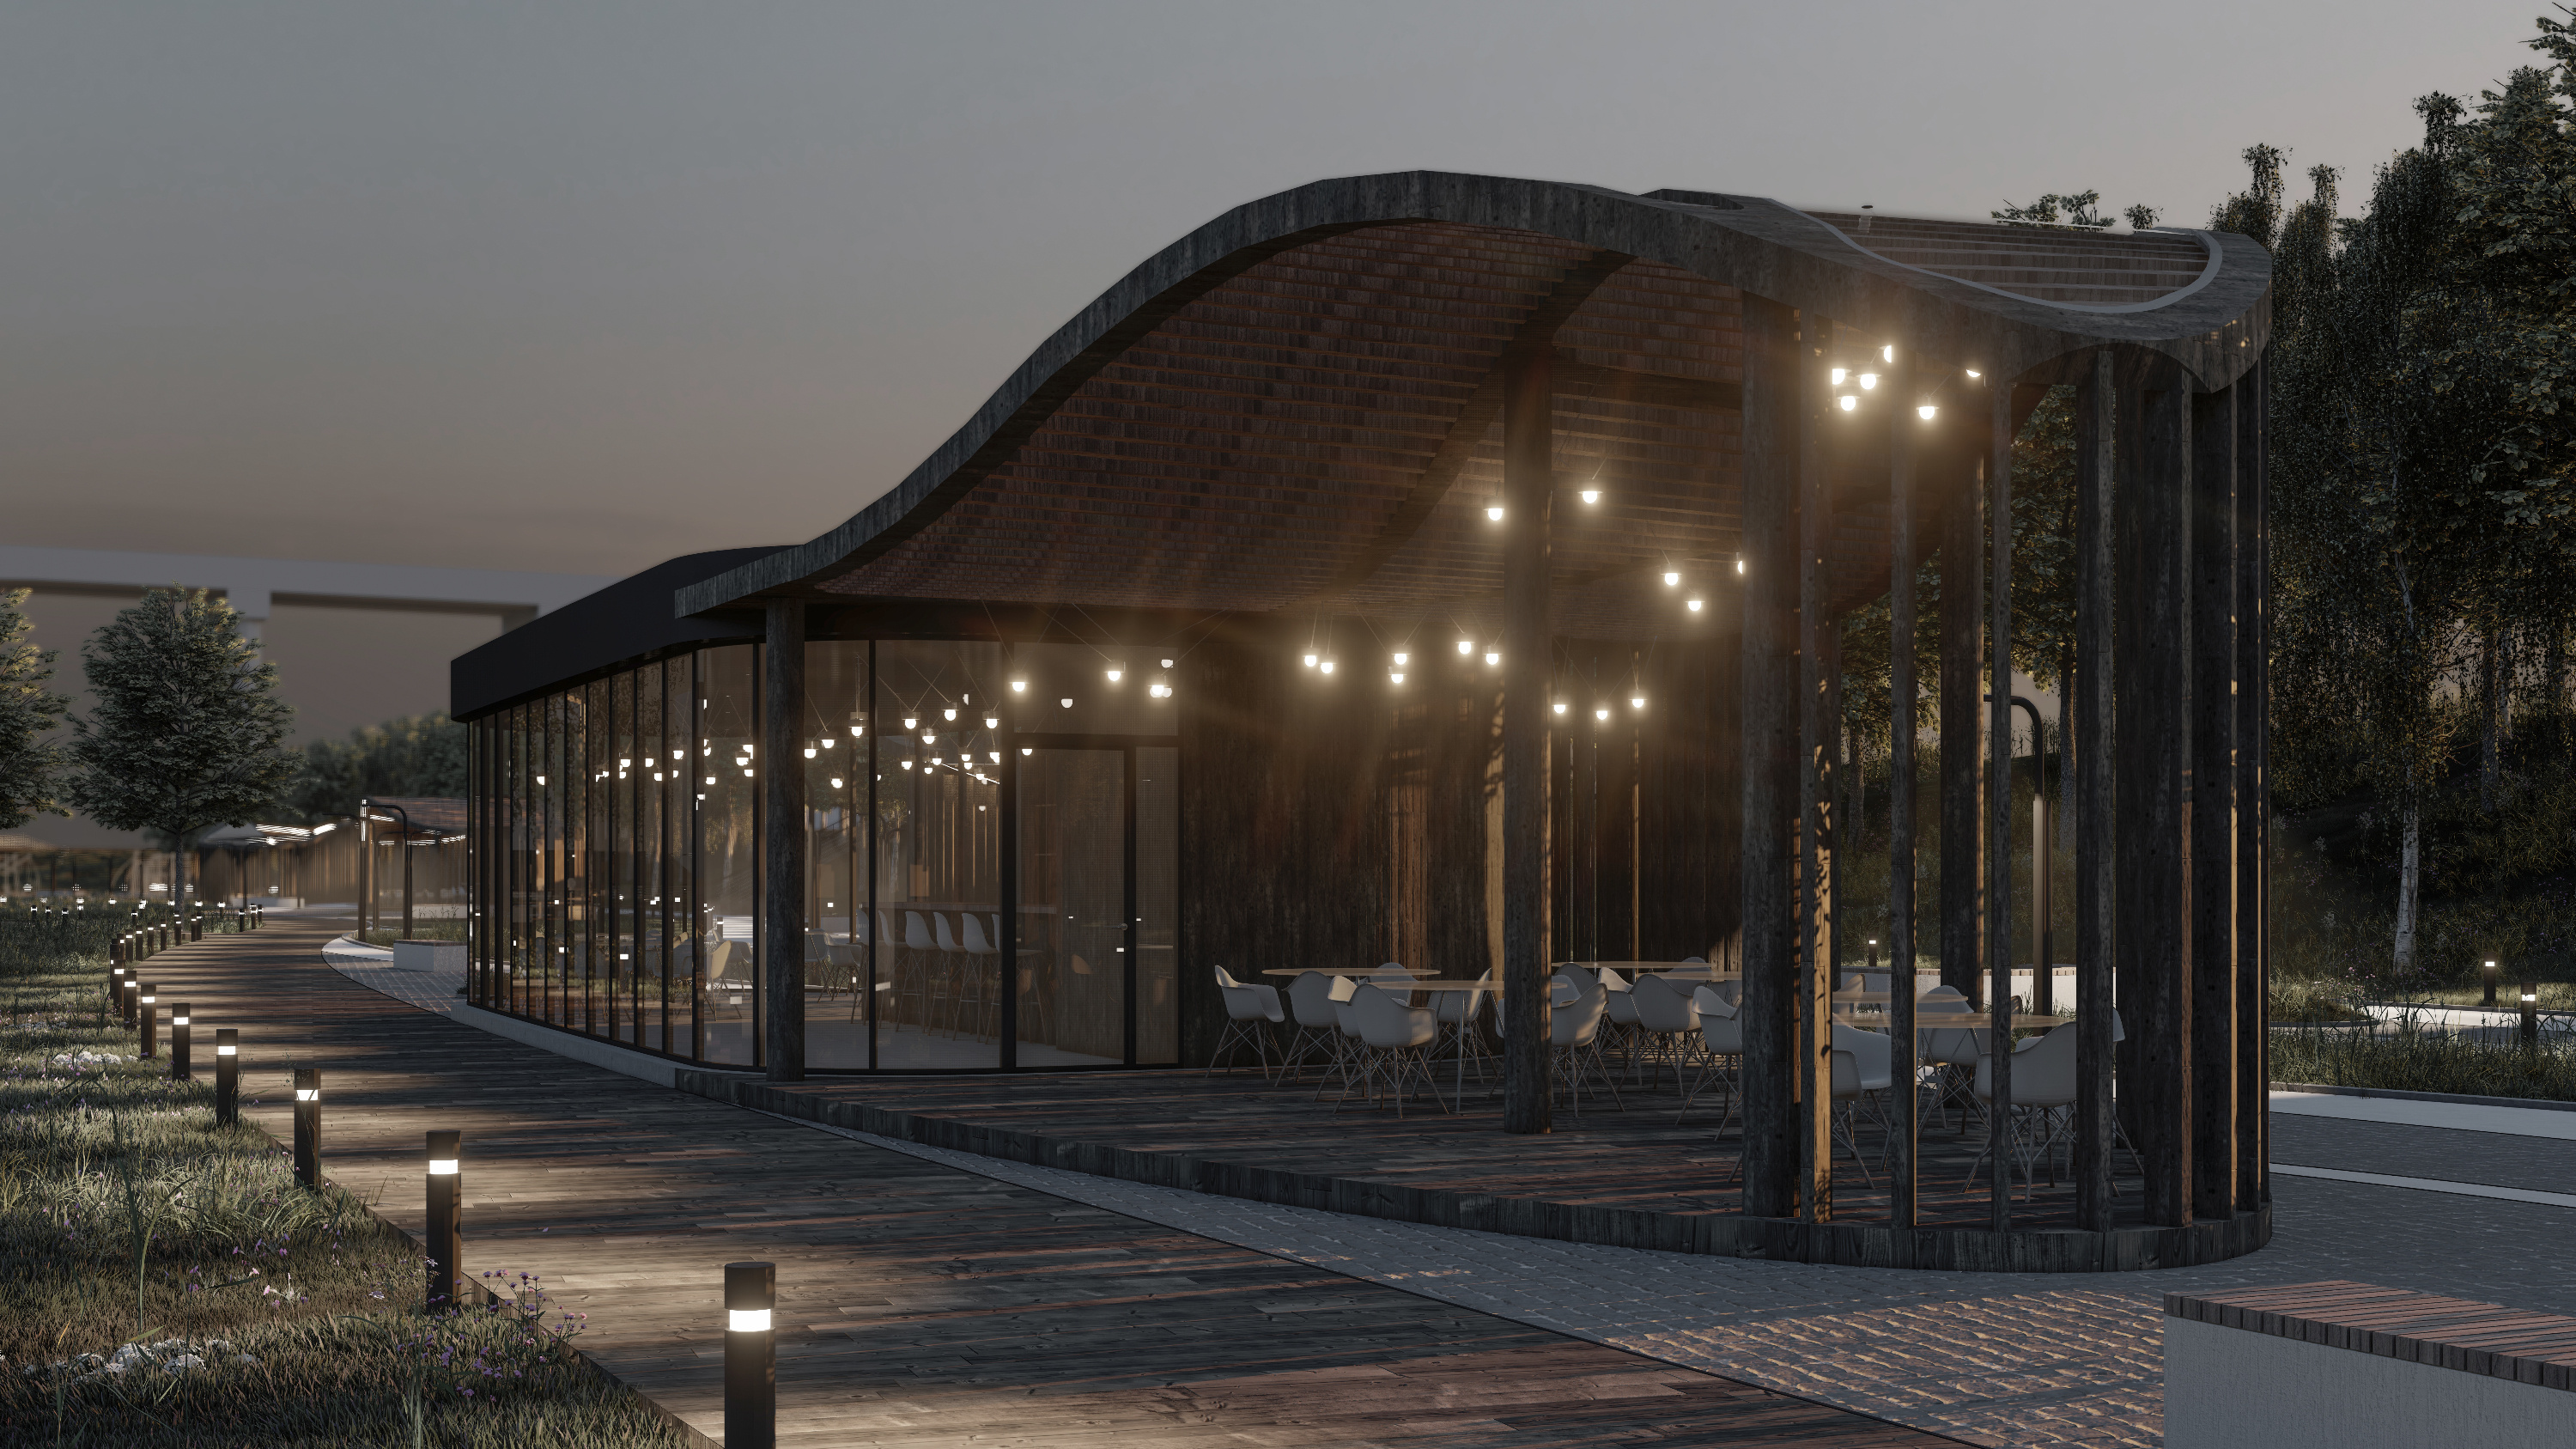 Архитектор предлагает использовать разное освещение, которое будет создавать особую атмосферу